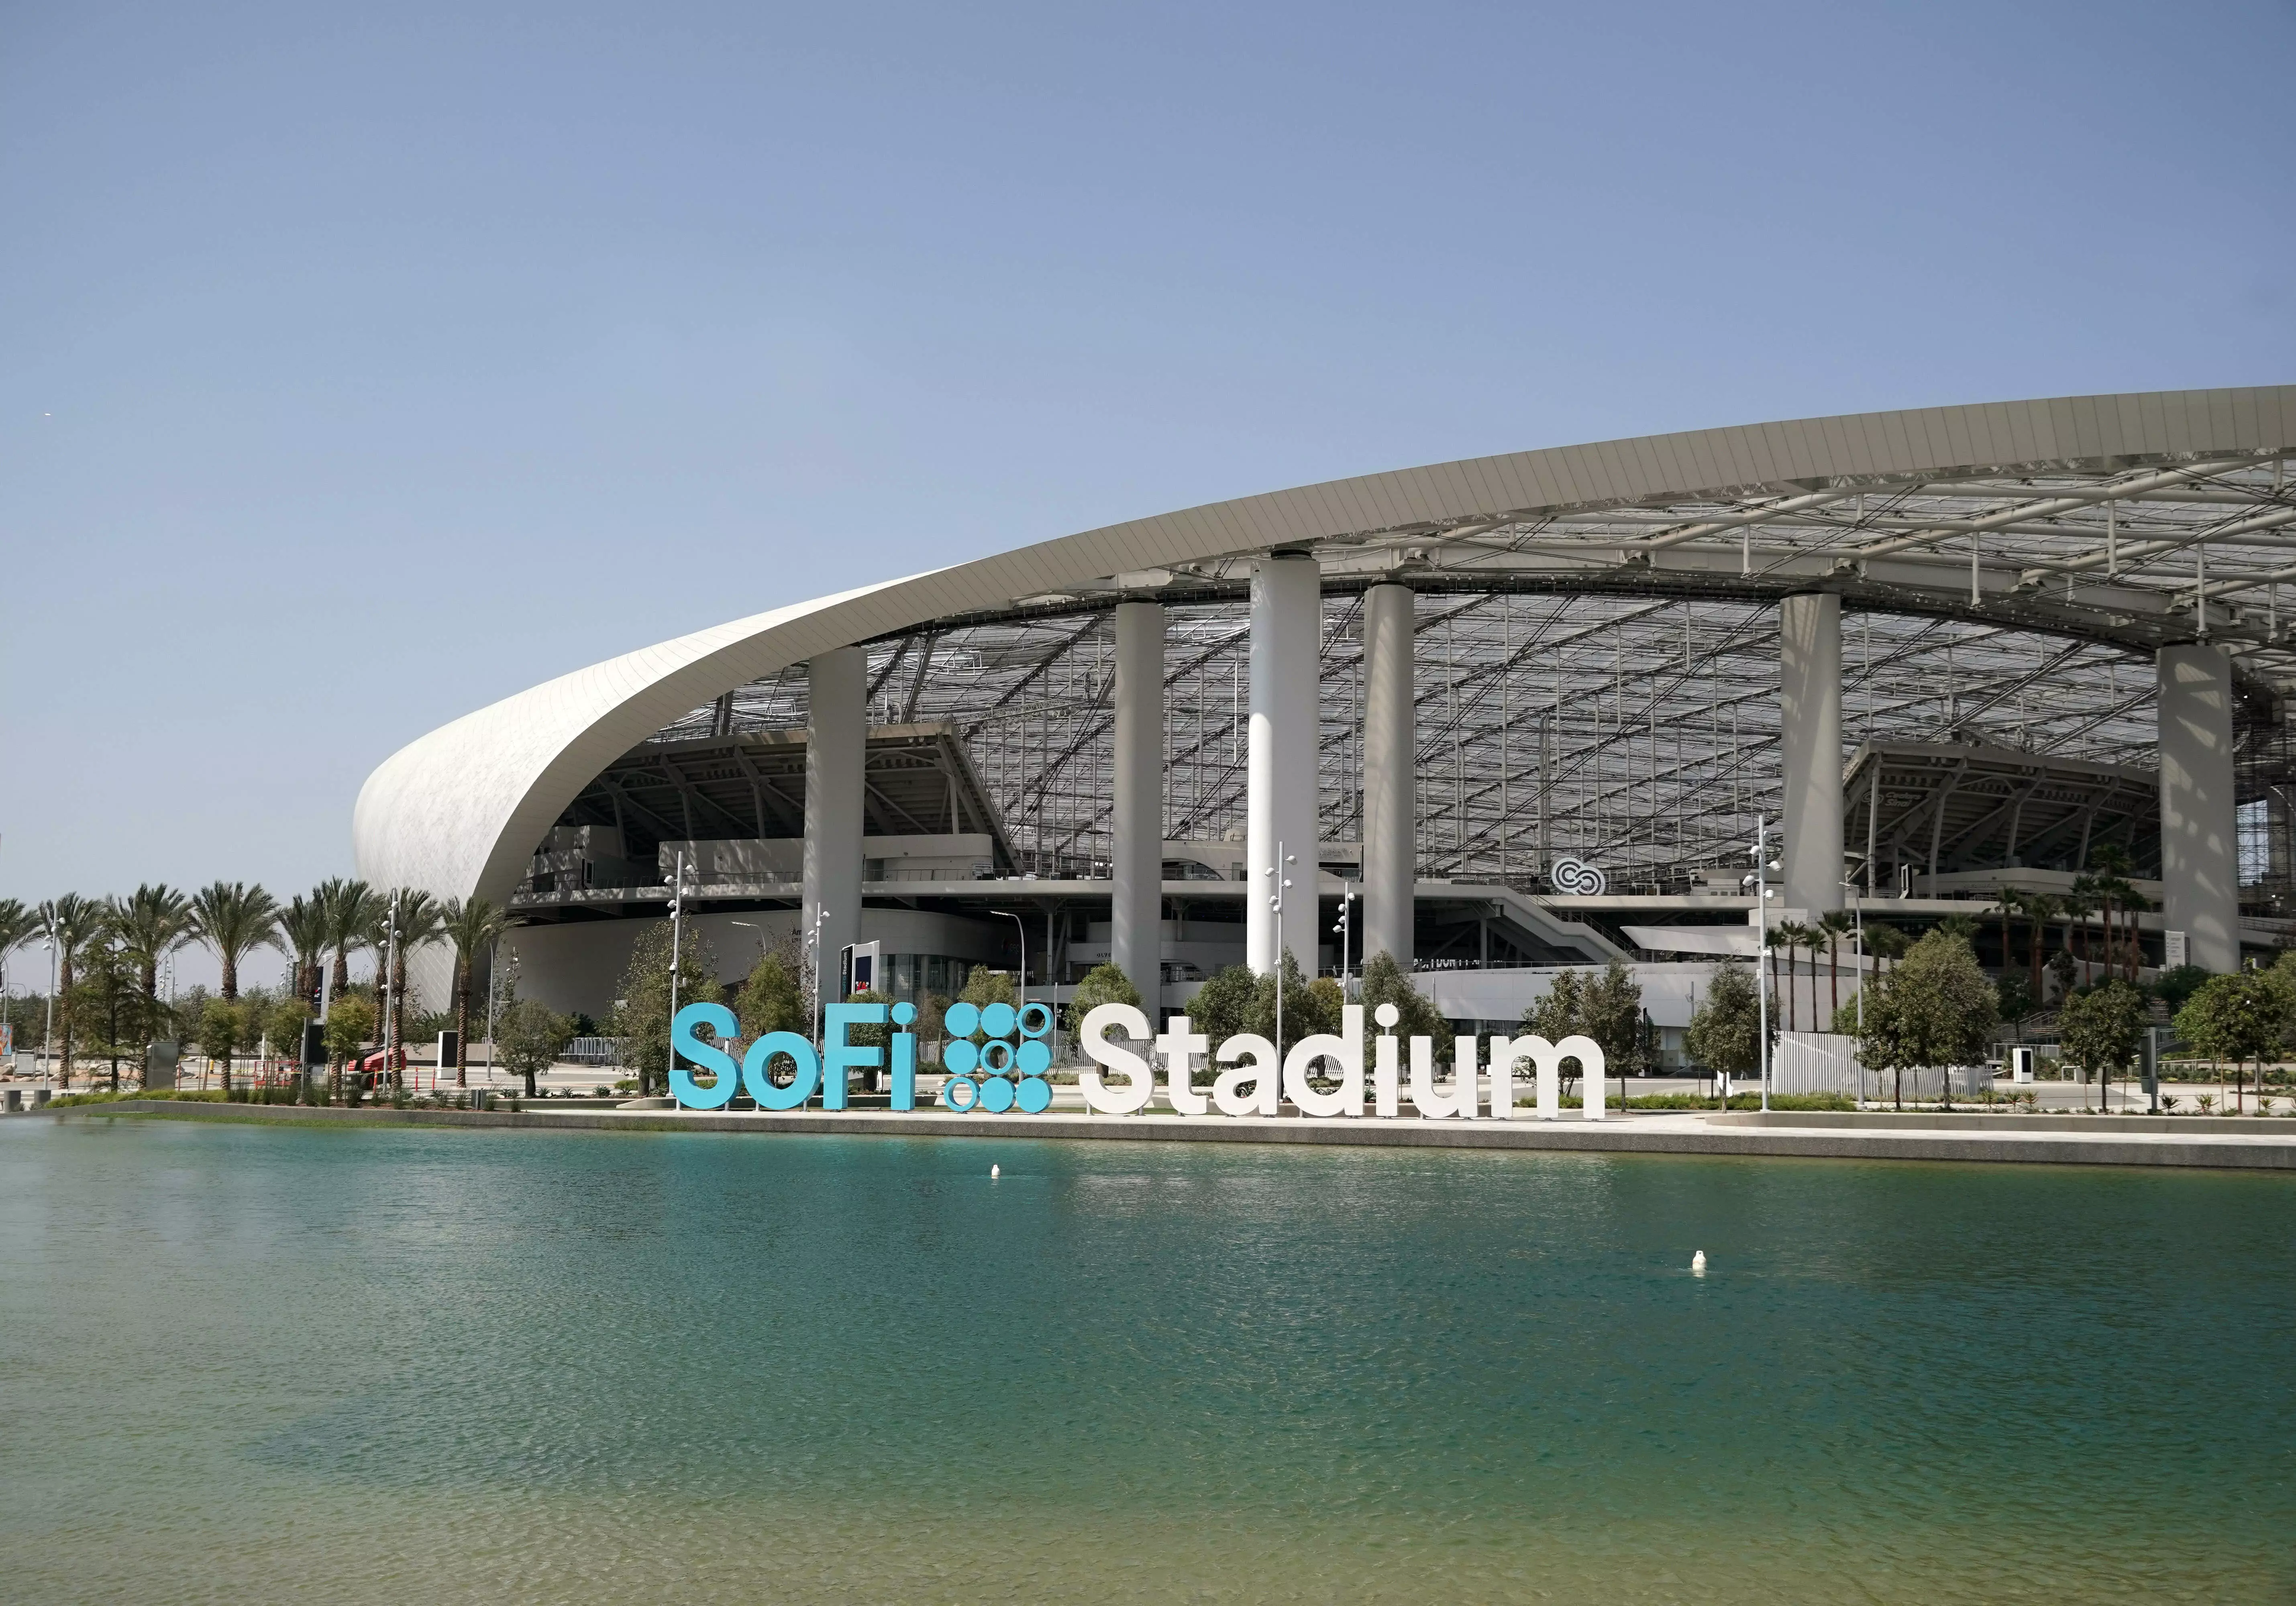 Стадион "Софи" примет церемонии открытия и закрытия Олимпиады-2028 в Лос-Анджелесе